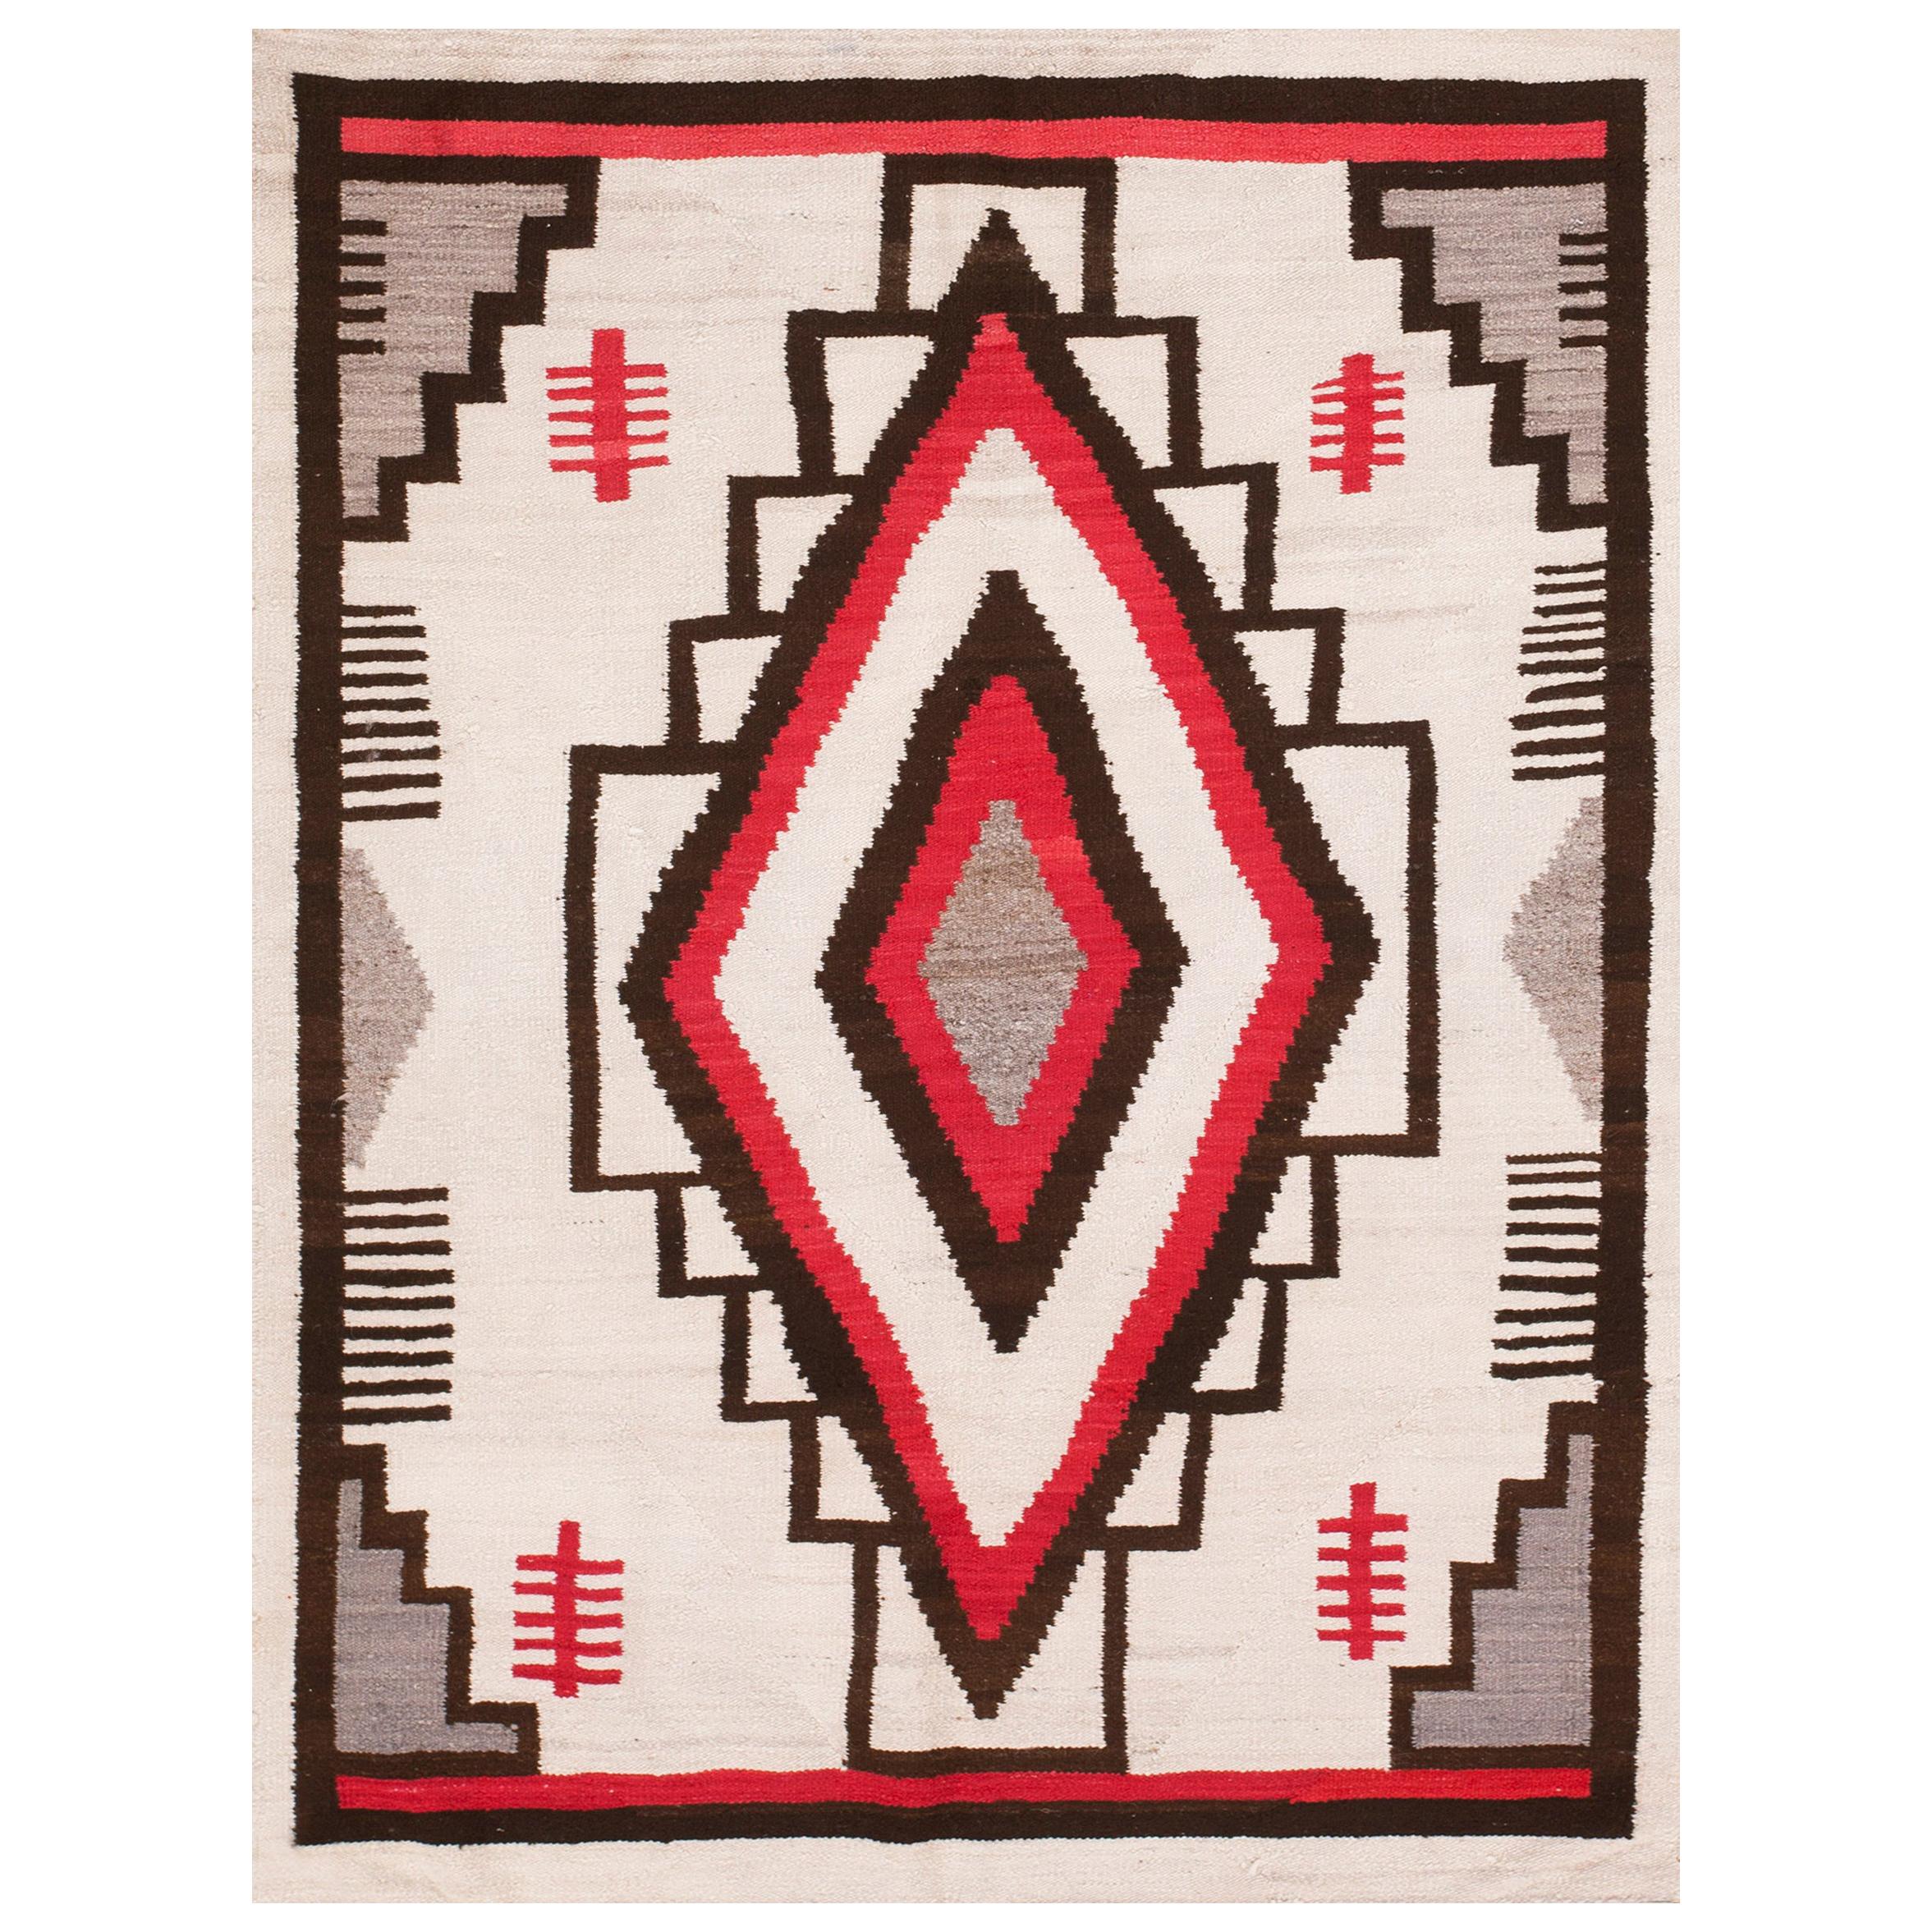 Amerikanischer Navajo-Teppich des frühen 20. Jahrhunderts ( 4' x 5'4" - 122 x 163)